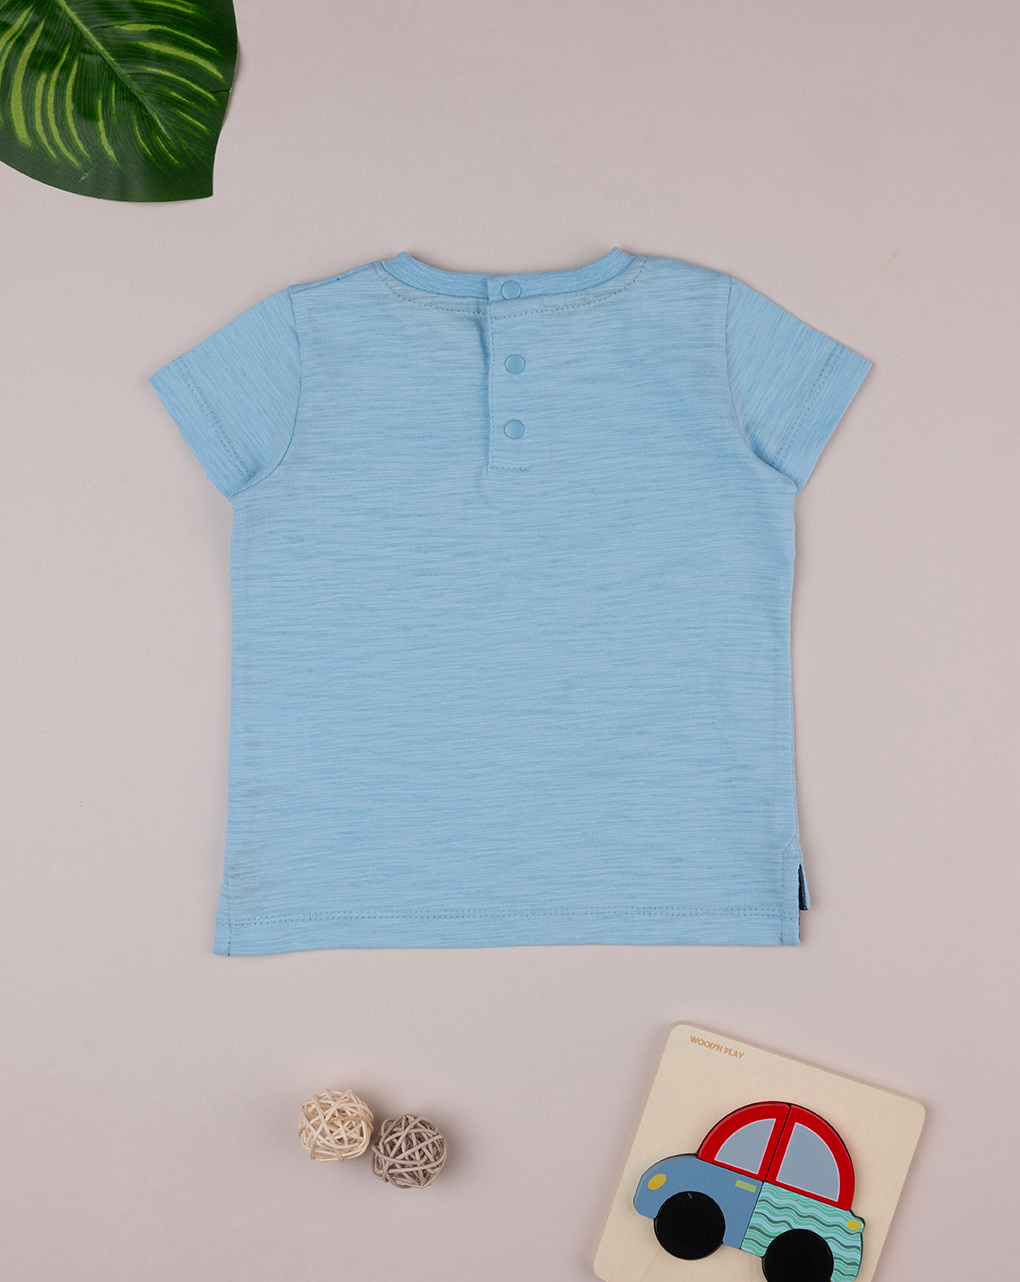 βρεφικό t-shirt γαλάζιο με τσέπη για αγόρι - Prénatal